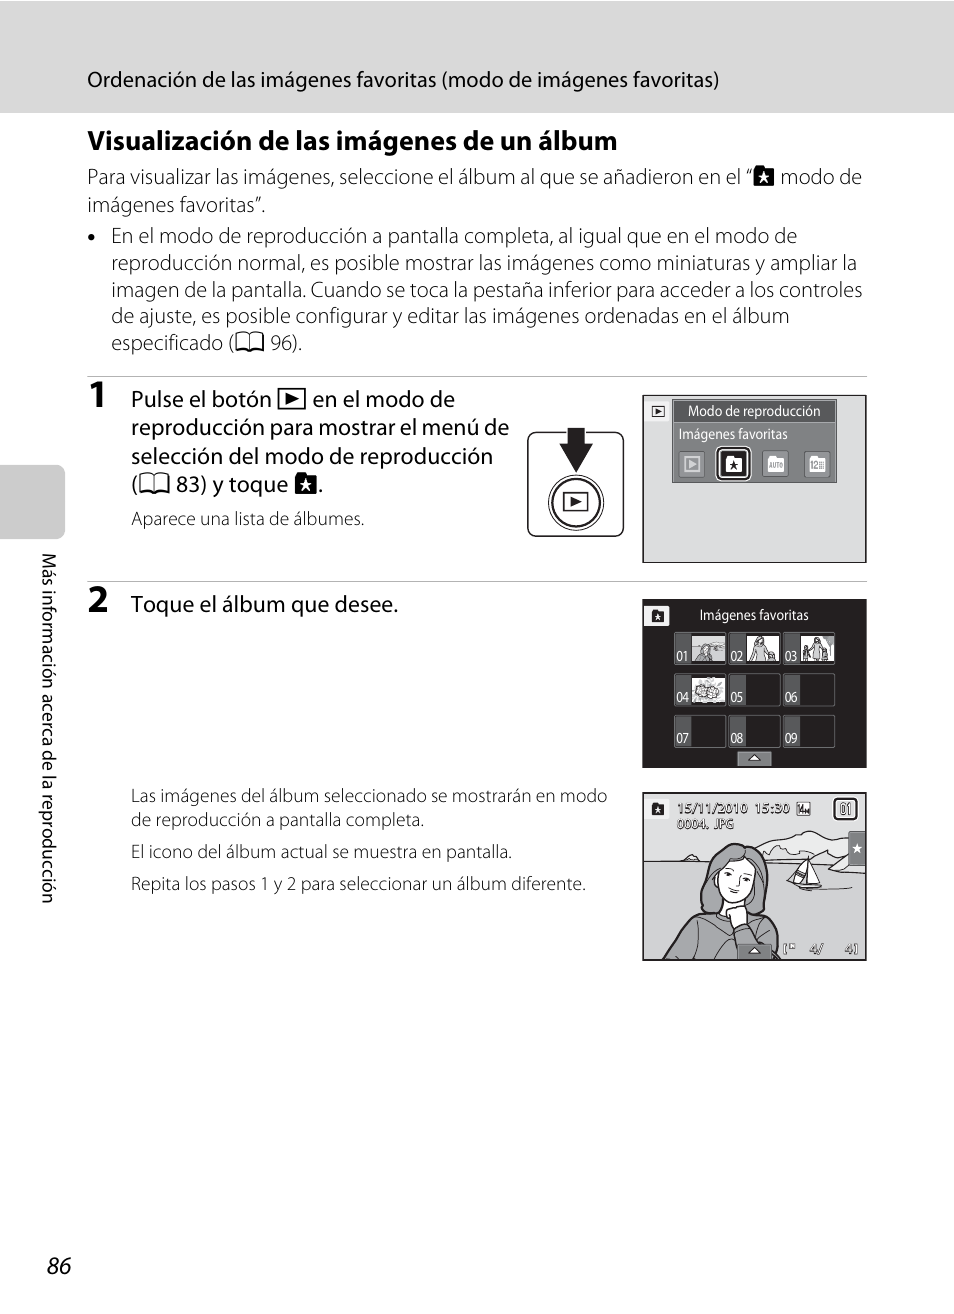 Visualización de las imágenes de un álbum, Y toque h, Toque el álbum que desee | Nikon Coolpix S1100pj Manual del usuario | Página 100 / 216